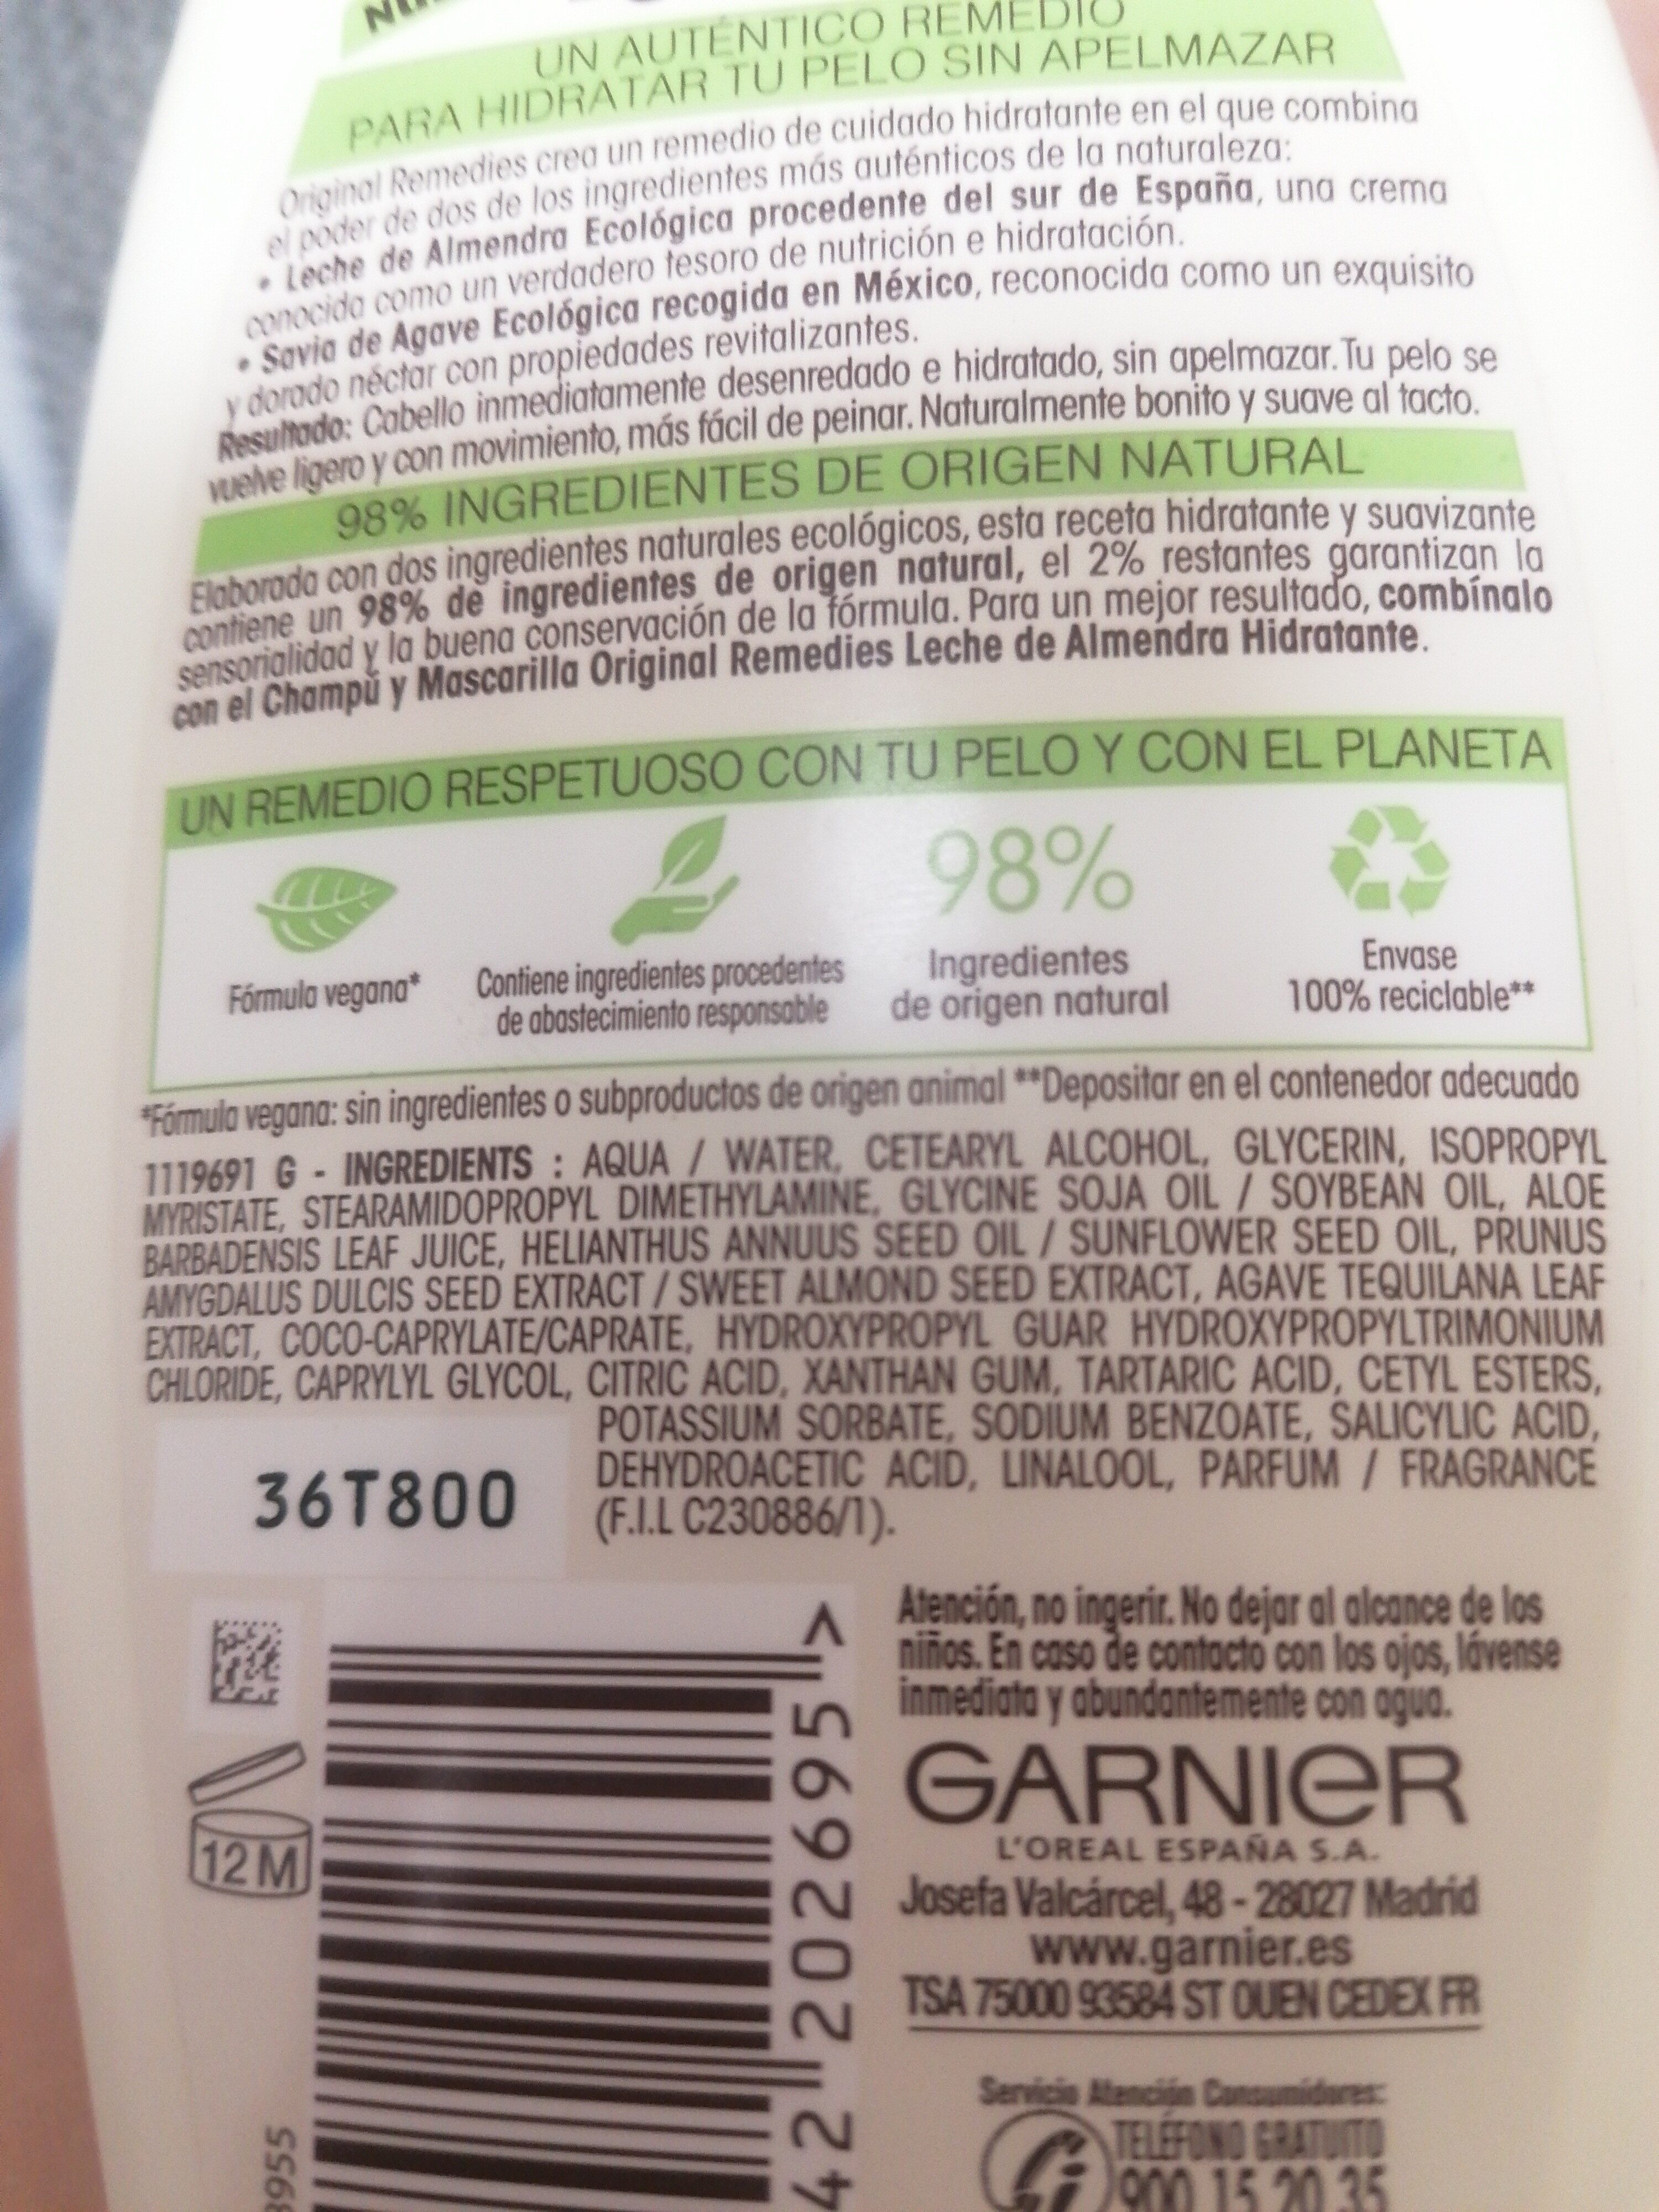 Acondicionador leche de almendra - Inhaltsstoffe - es